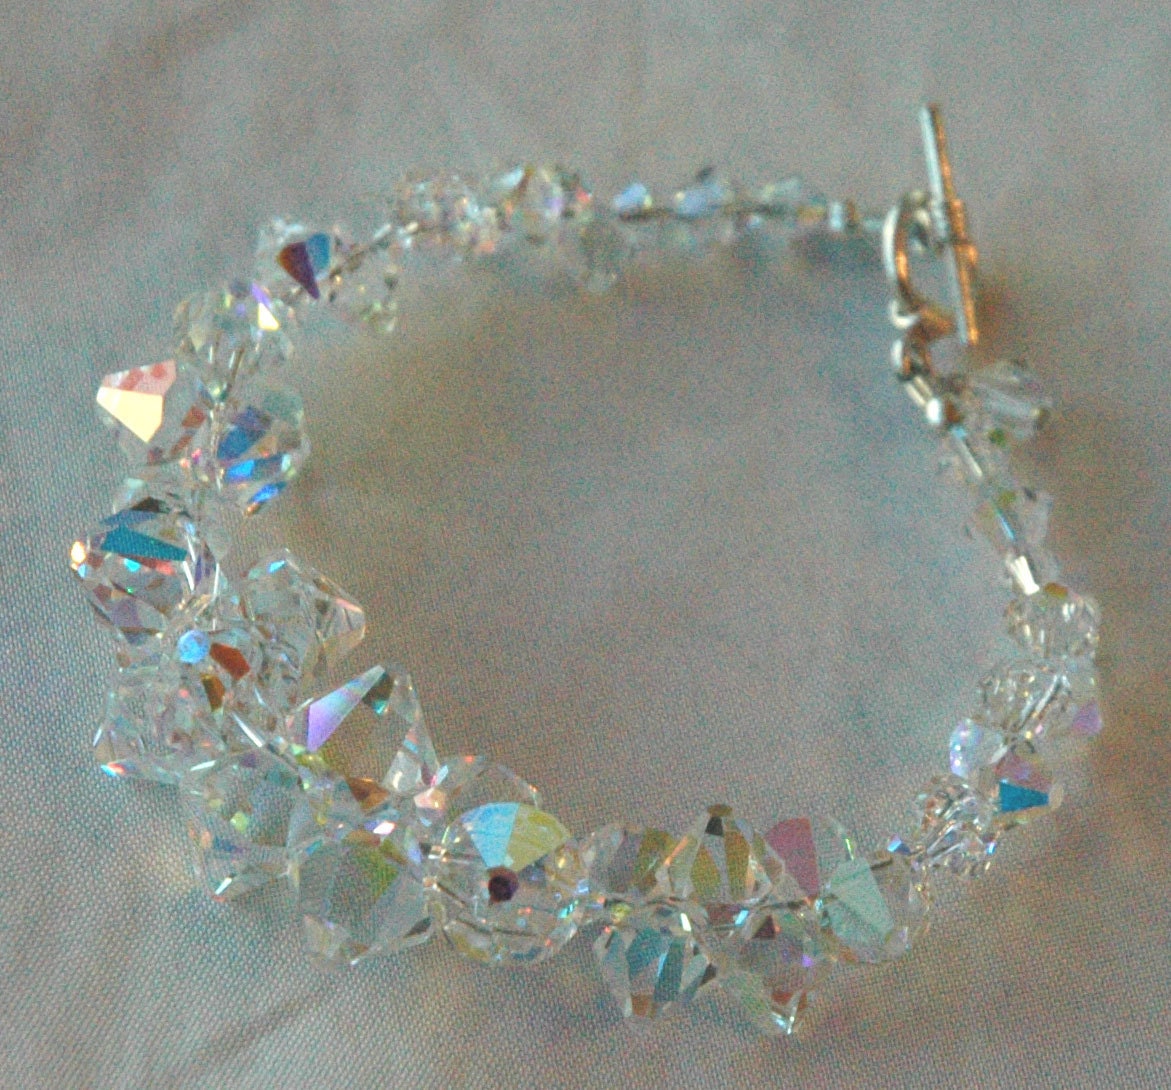 Bride Crystal Rock Bicone Necklace,Bride Crystal Jewelry Necklace,Bridal Crystal Jewelry Necklace,Wedding Necklaces for Brides,Mothers of